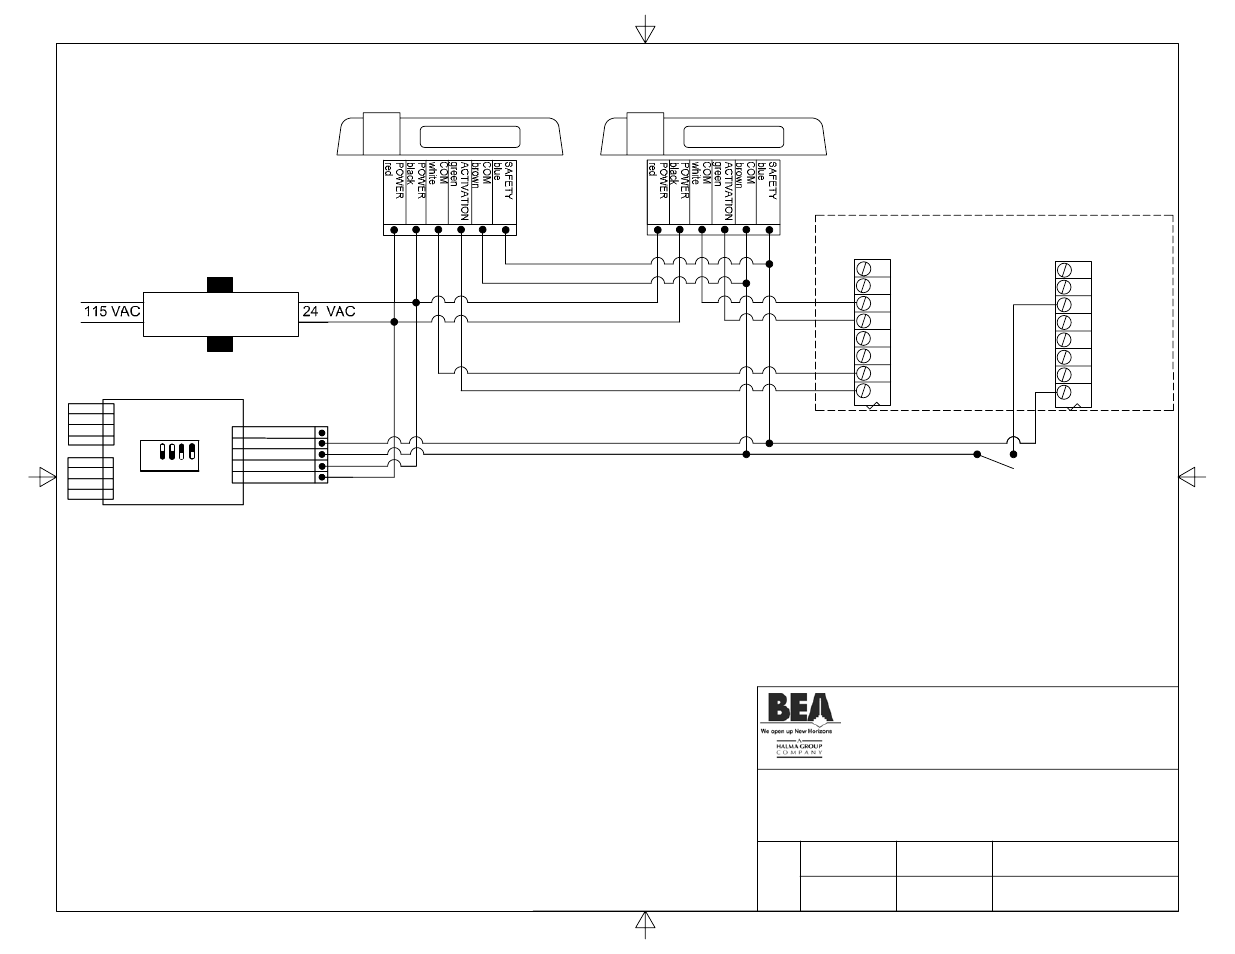 stanley duraglide wiring diagram - Wiring Diagram